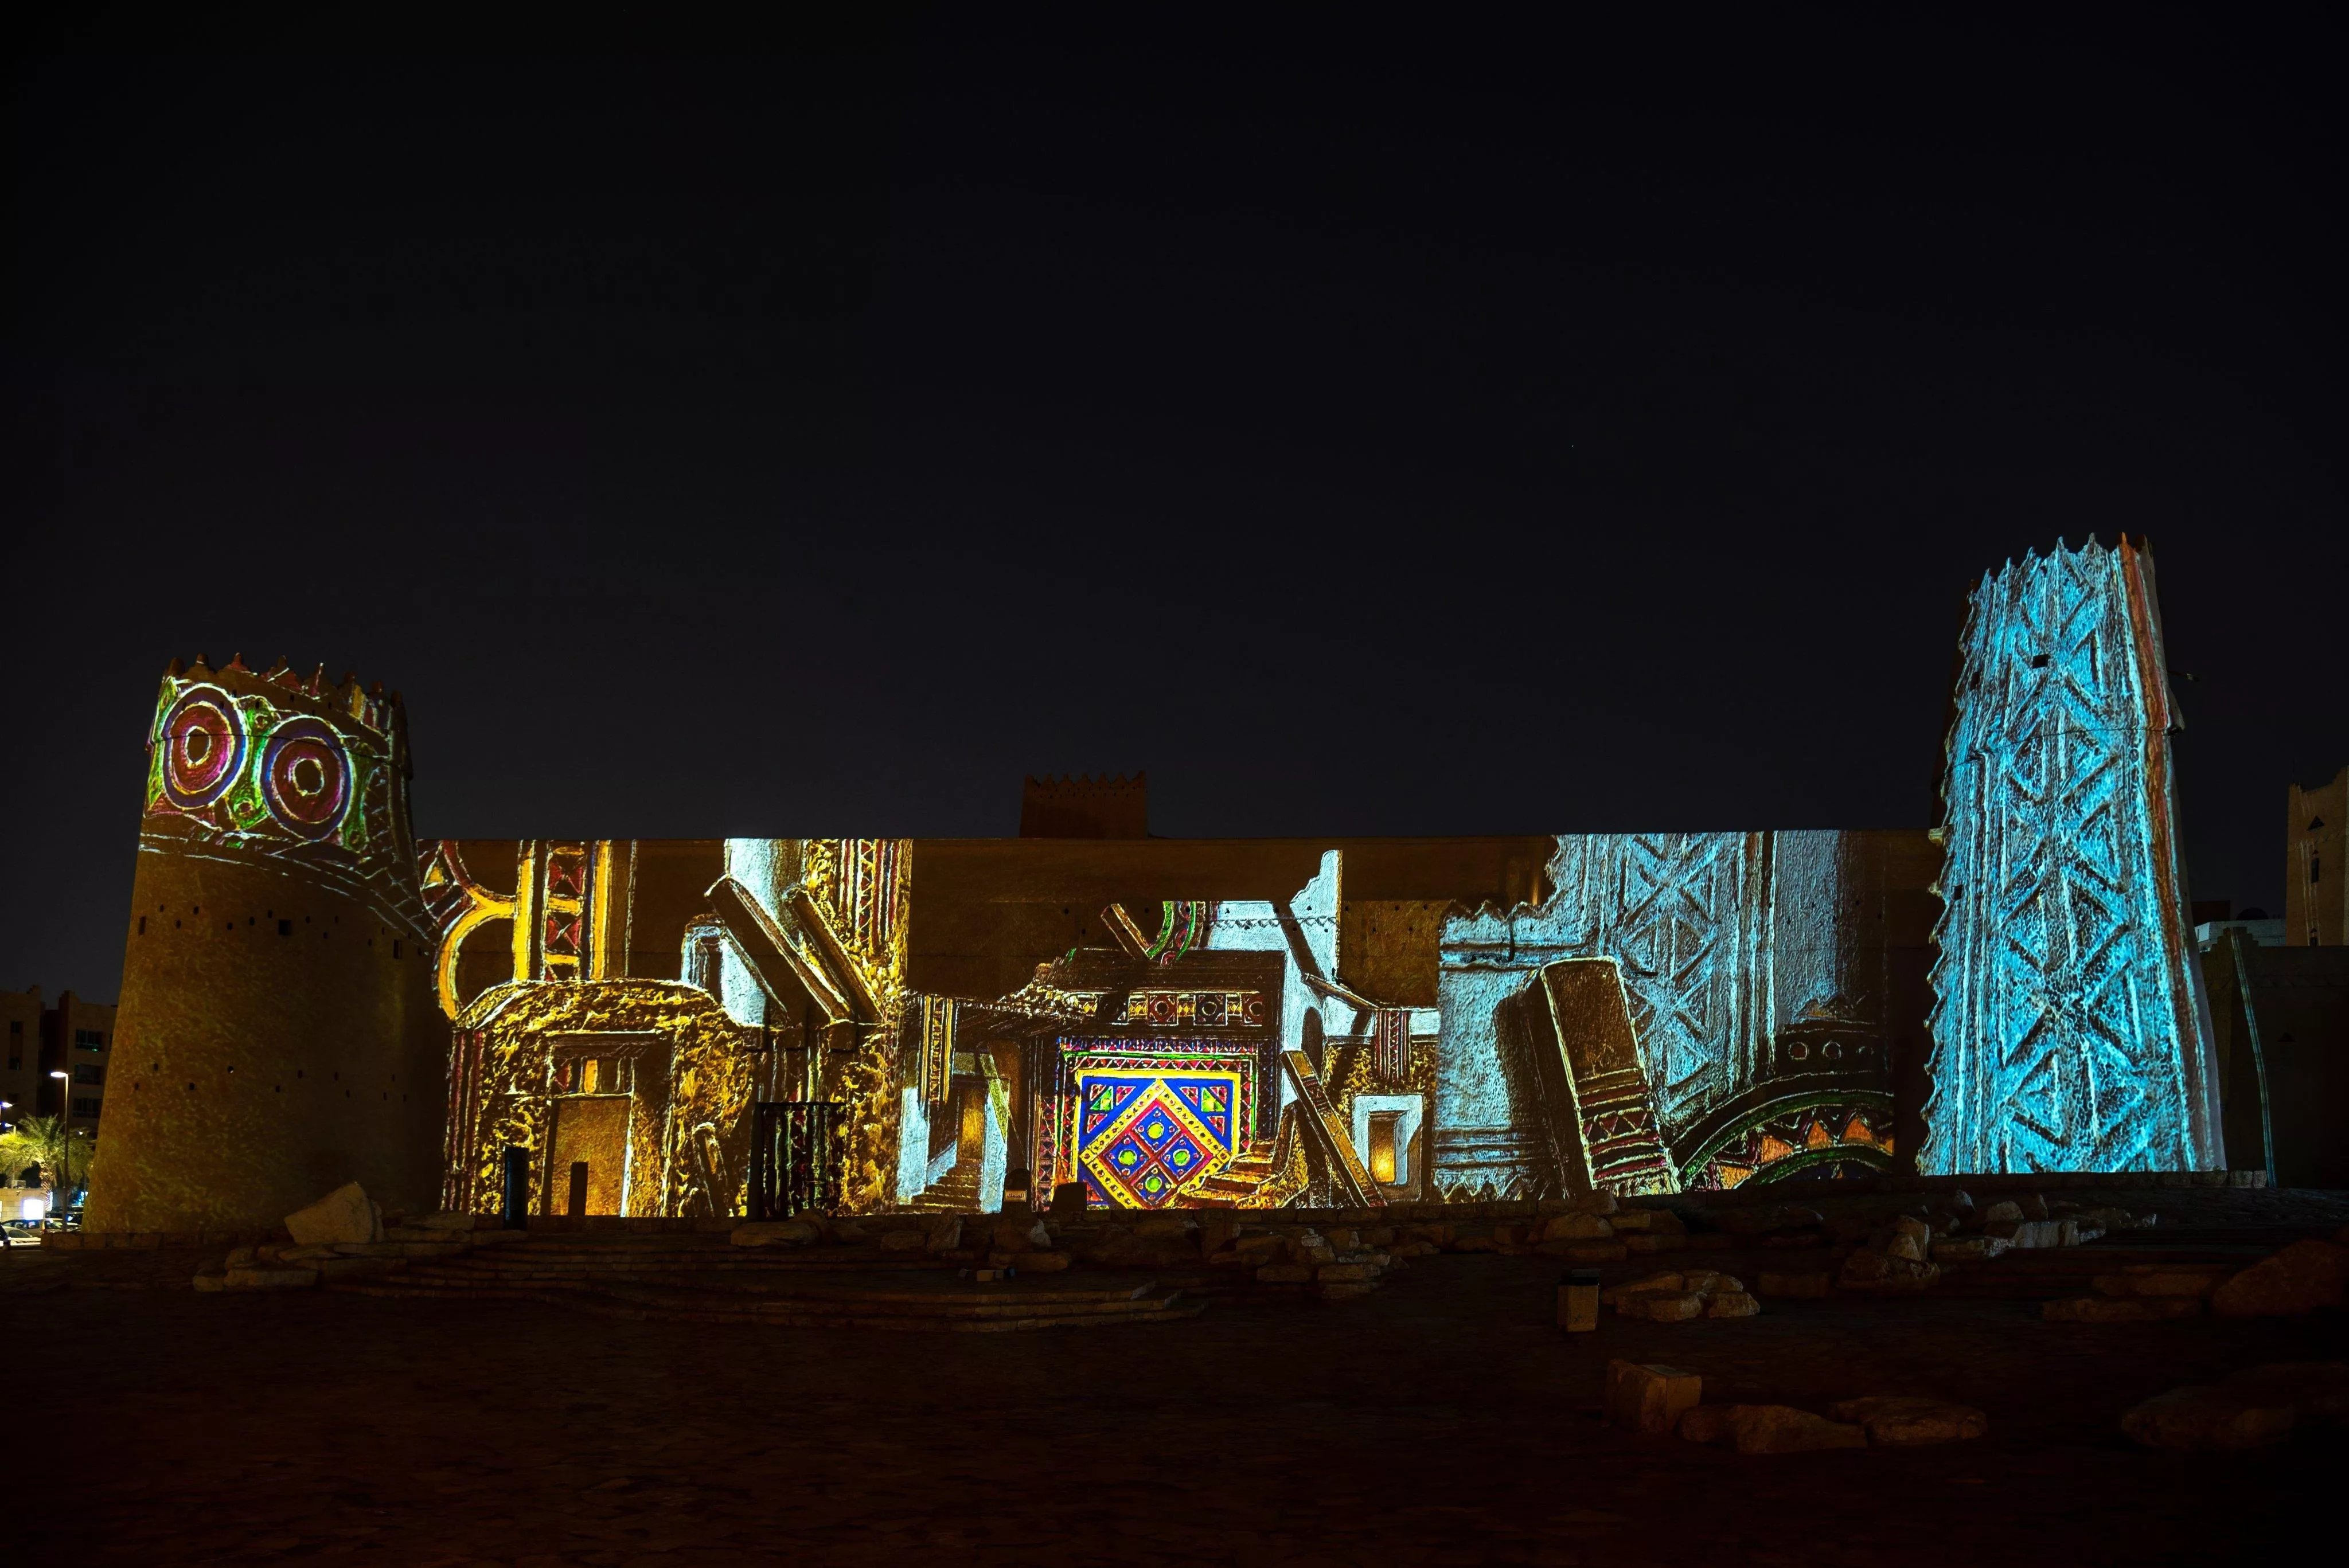 انطلاق فعاليات نور الرياض في السعودية بمشاركة 60 فناناً من 20 دولة مختلفة